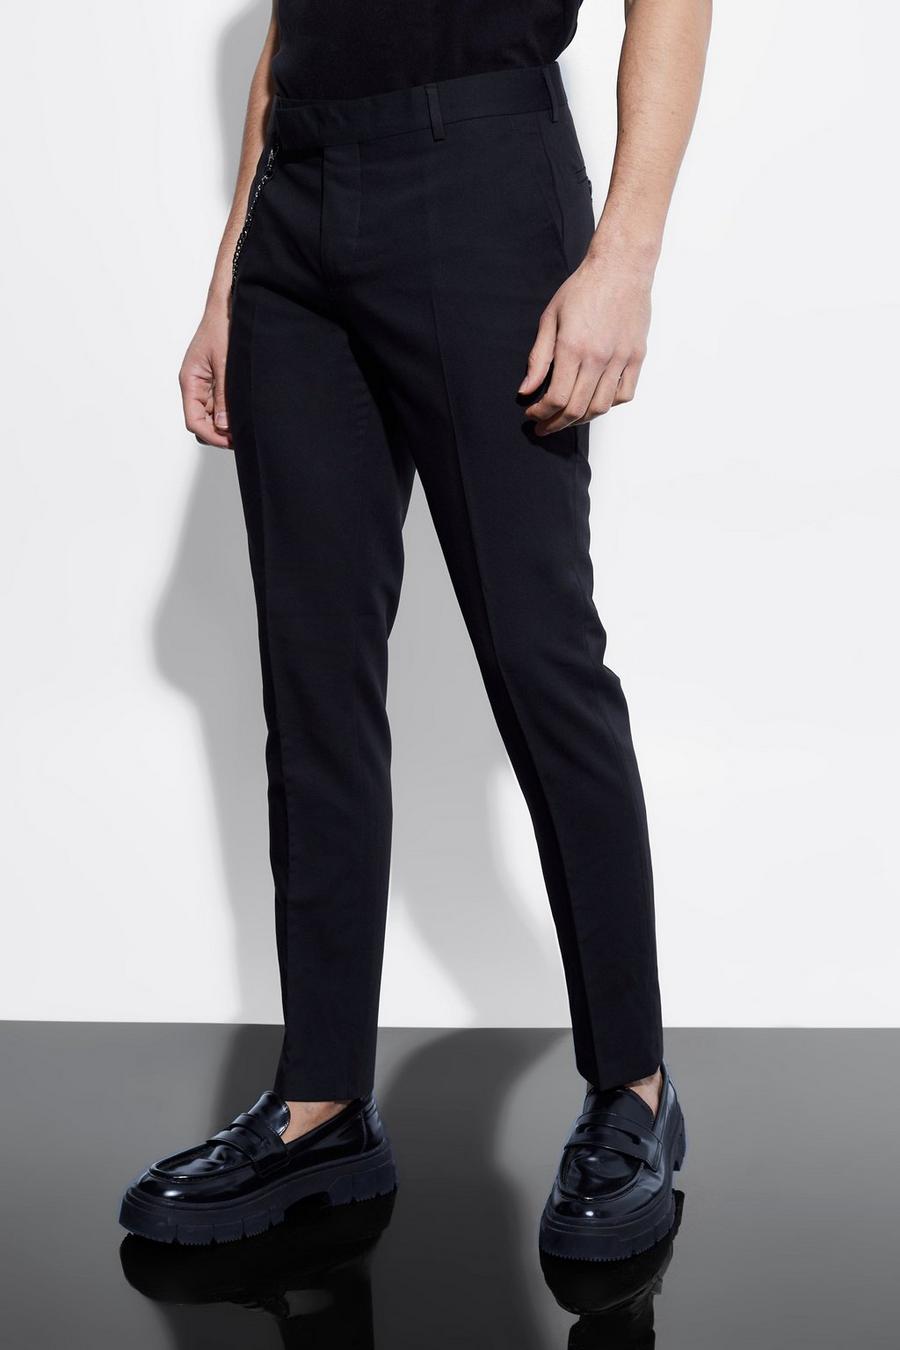 Pantaloni completo Skinny Fit con catena, Black negro